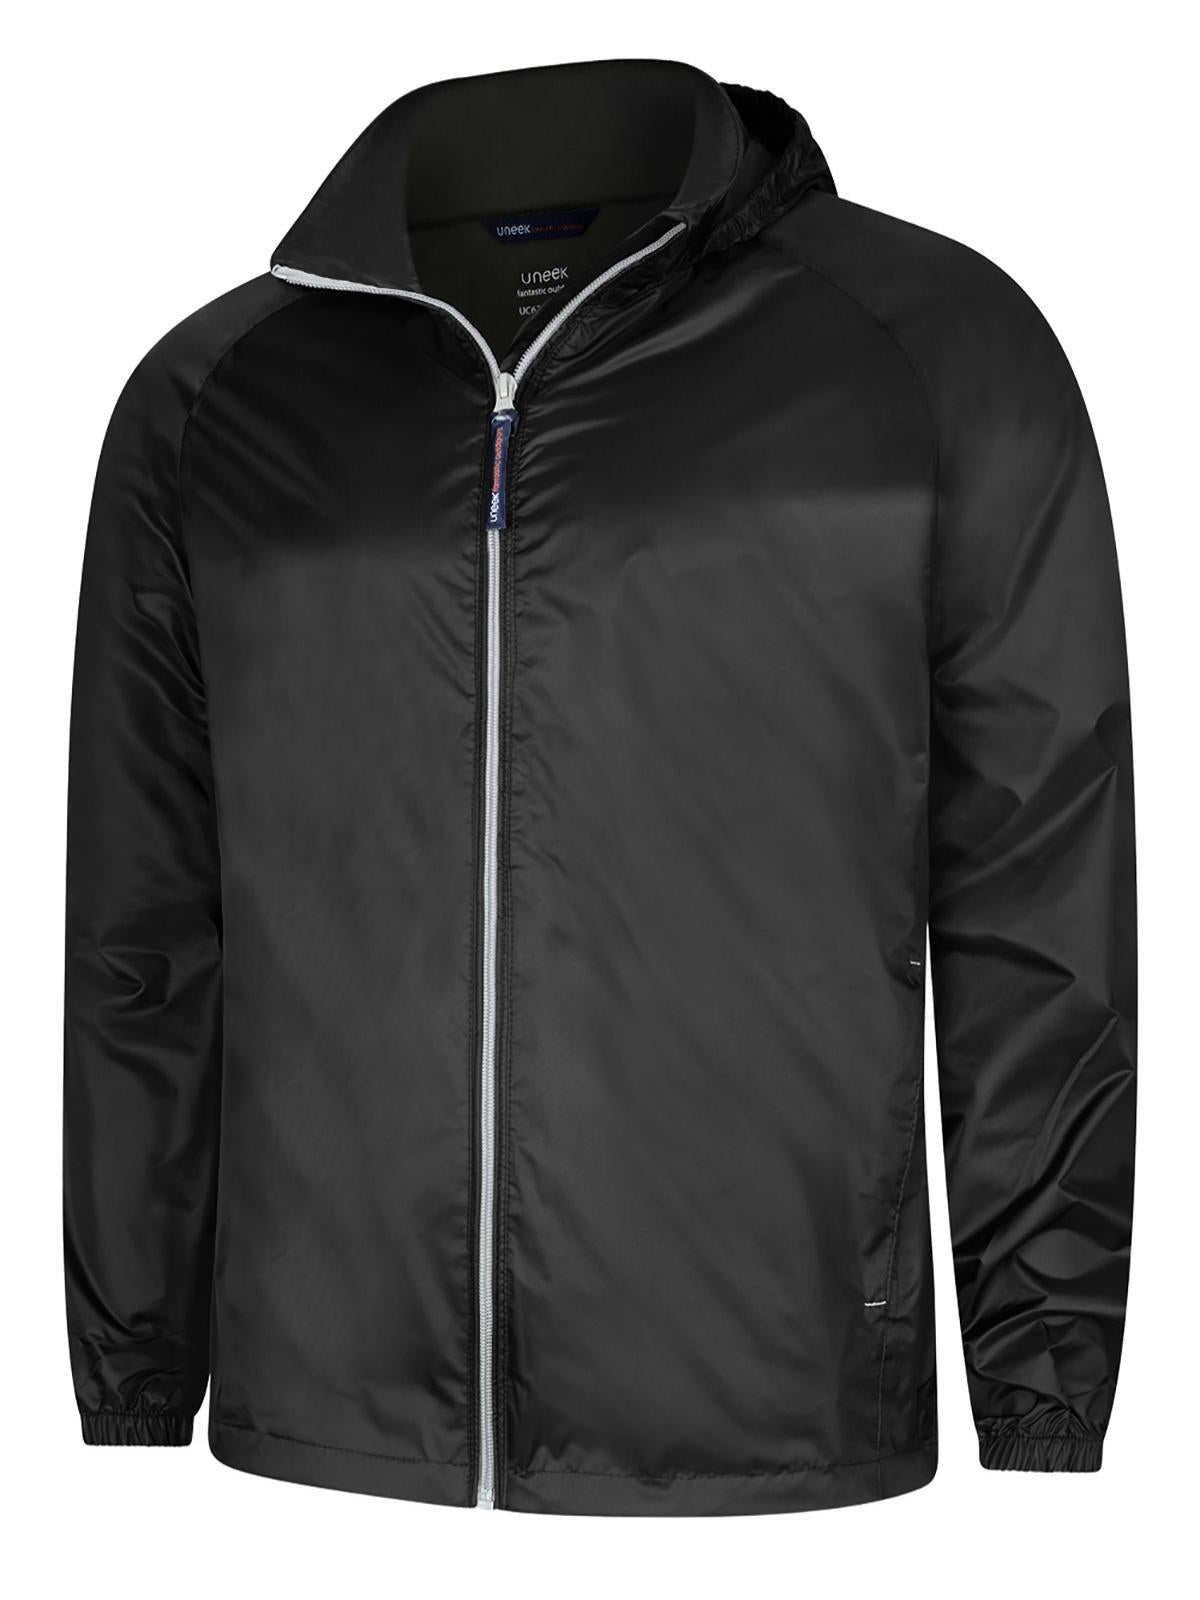 Black/Grey Waterproof Jacket with KES Print